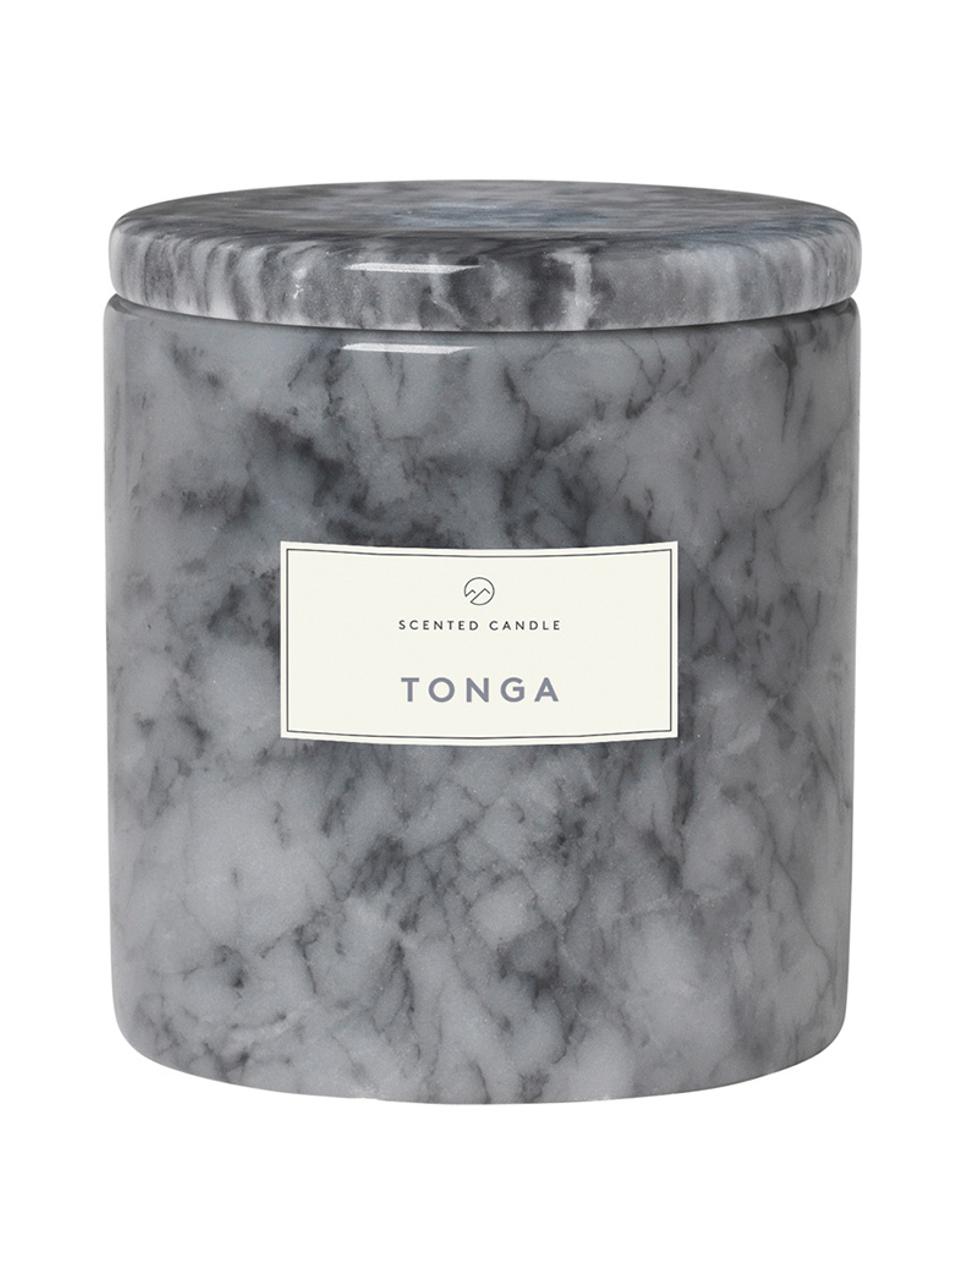 Candela Profumata Tonga (agrumi, note balsamiche, pino), Contenitore: marmo, Marmo grigio, Ø 7 x Alt. 8 cm